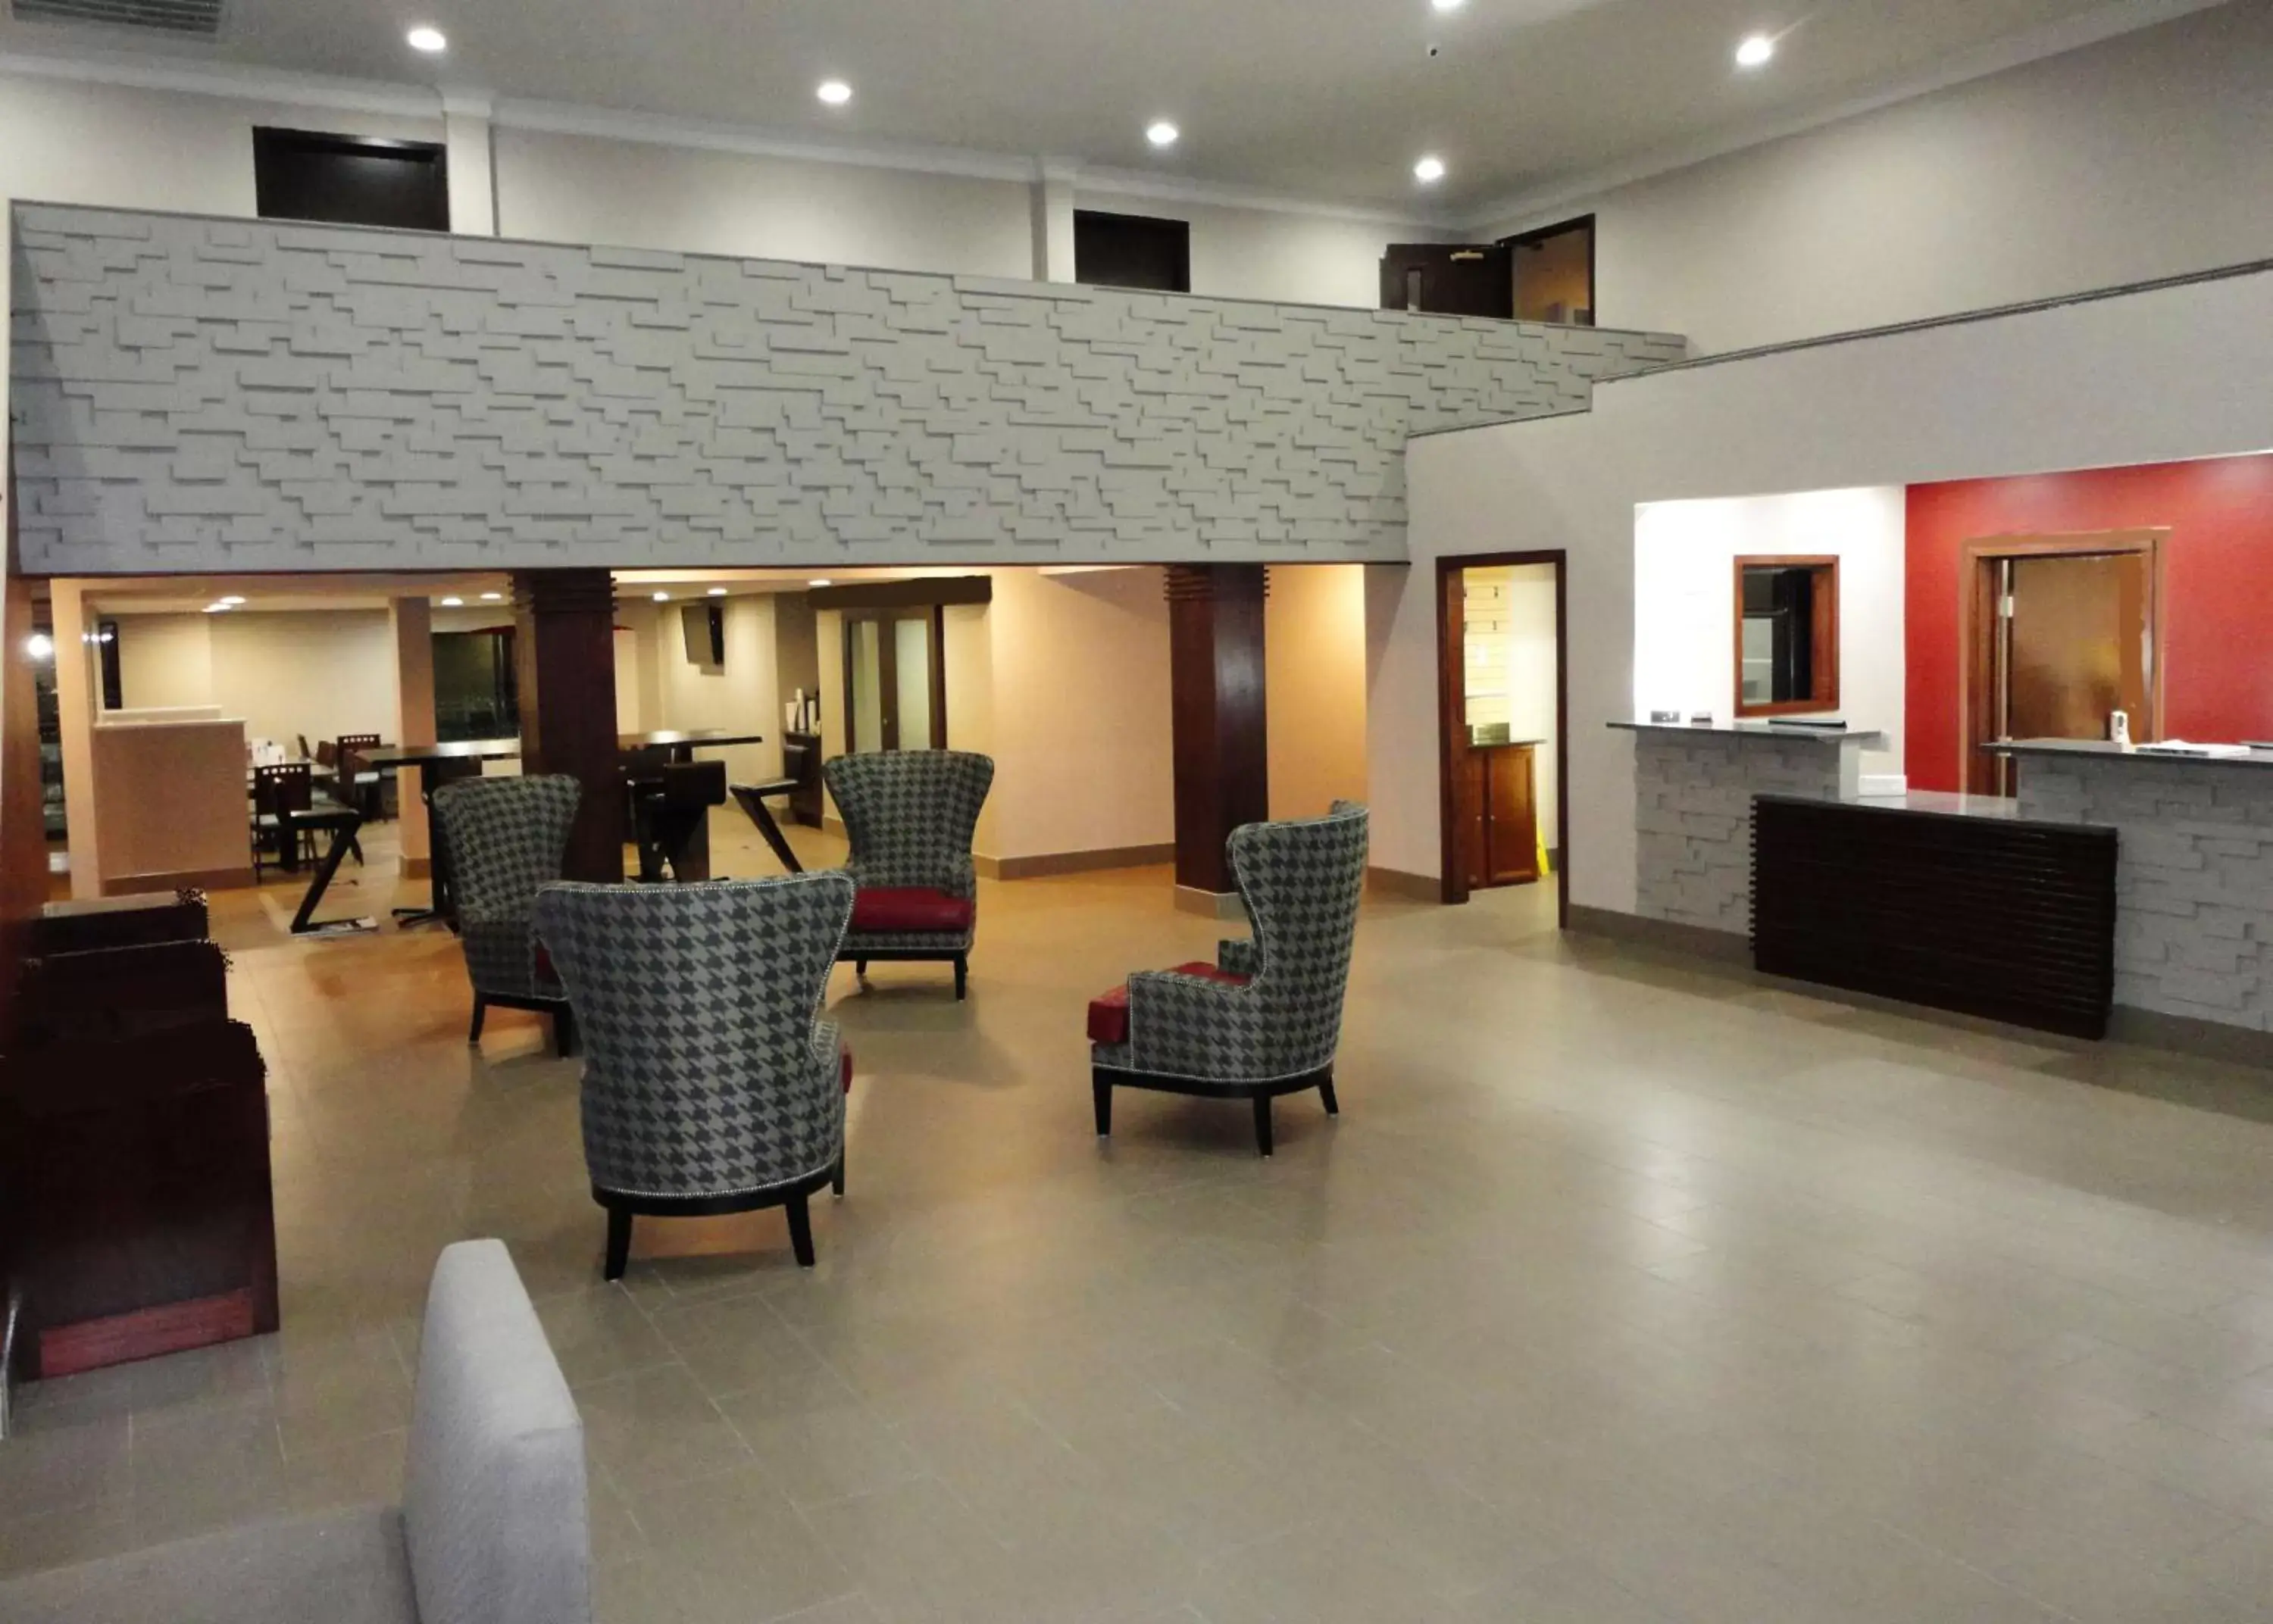 Lobby or reception, Lobby/Reception in Ramada by Wyndham Tuscaloosa